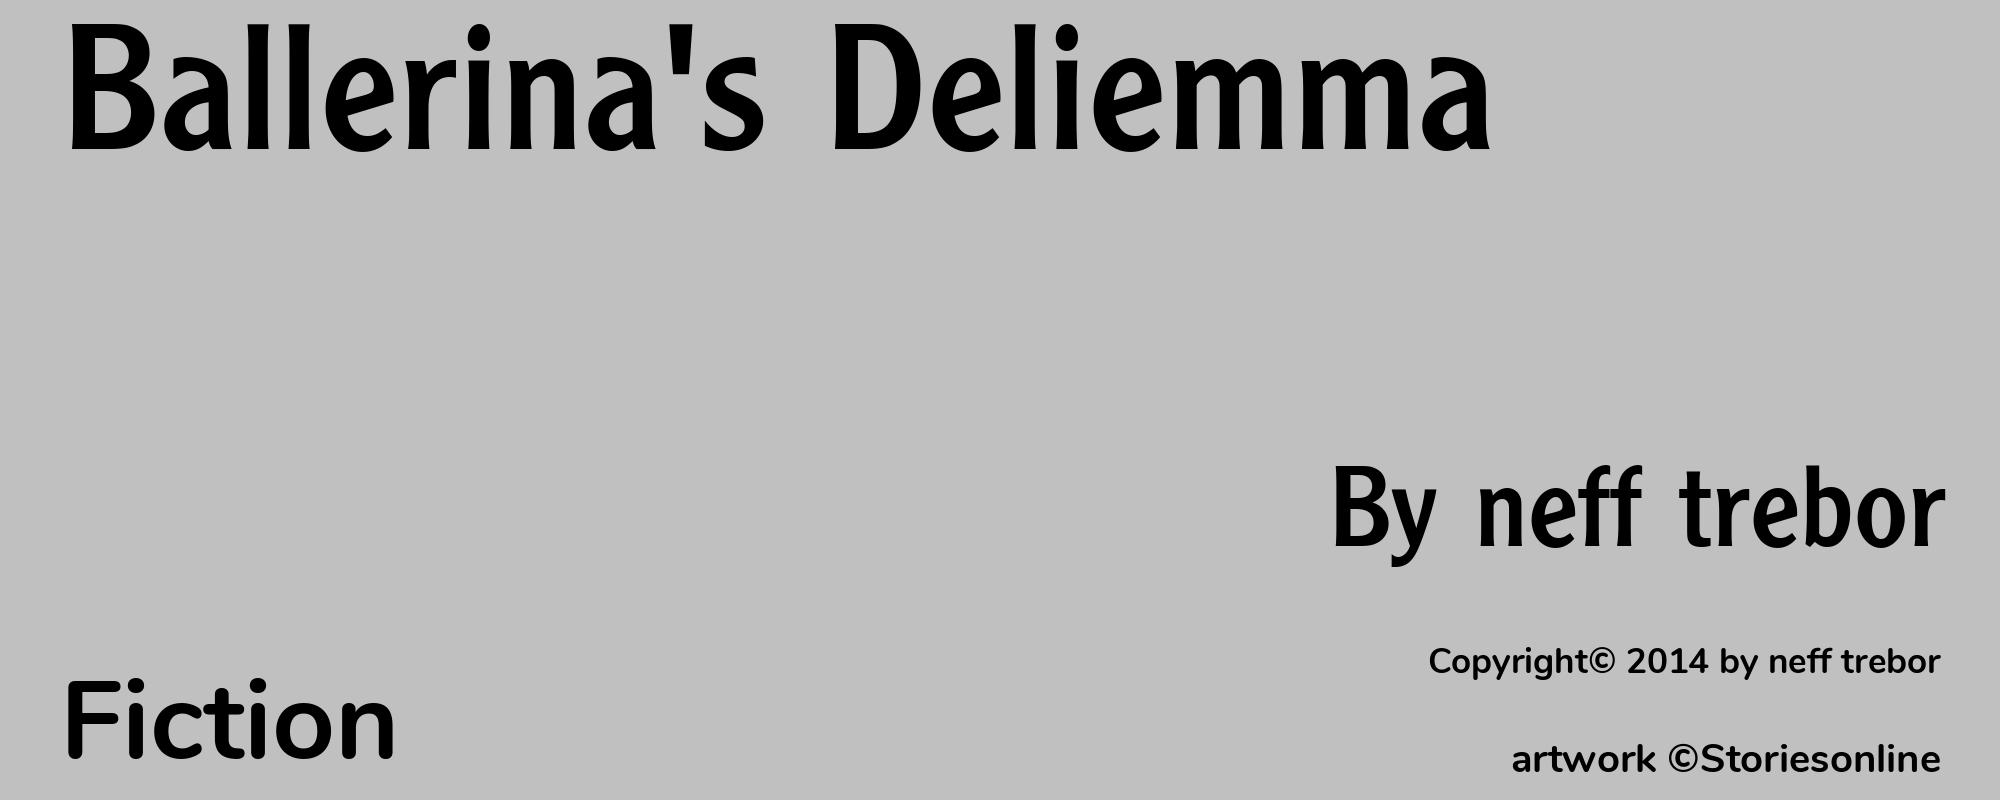 Ballerina's Deliemma - Cover